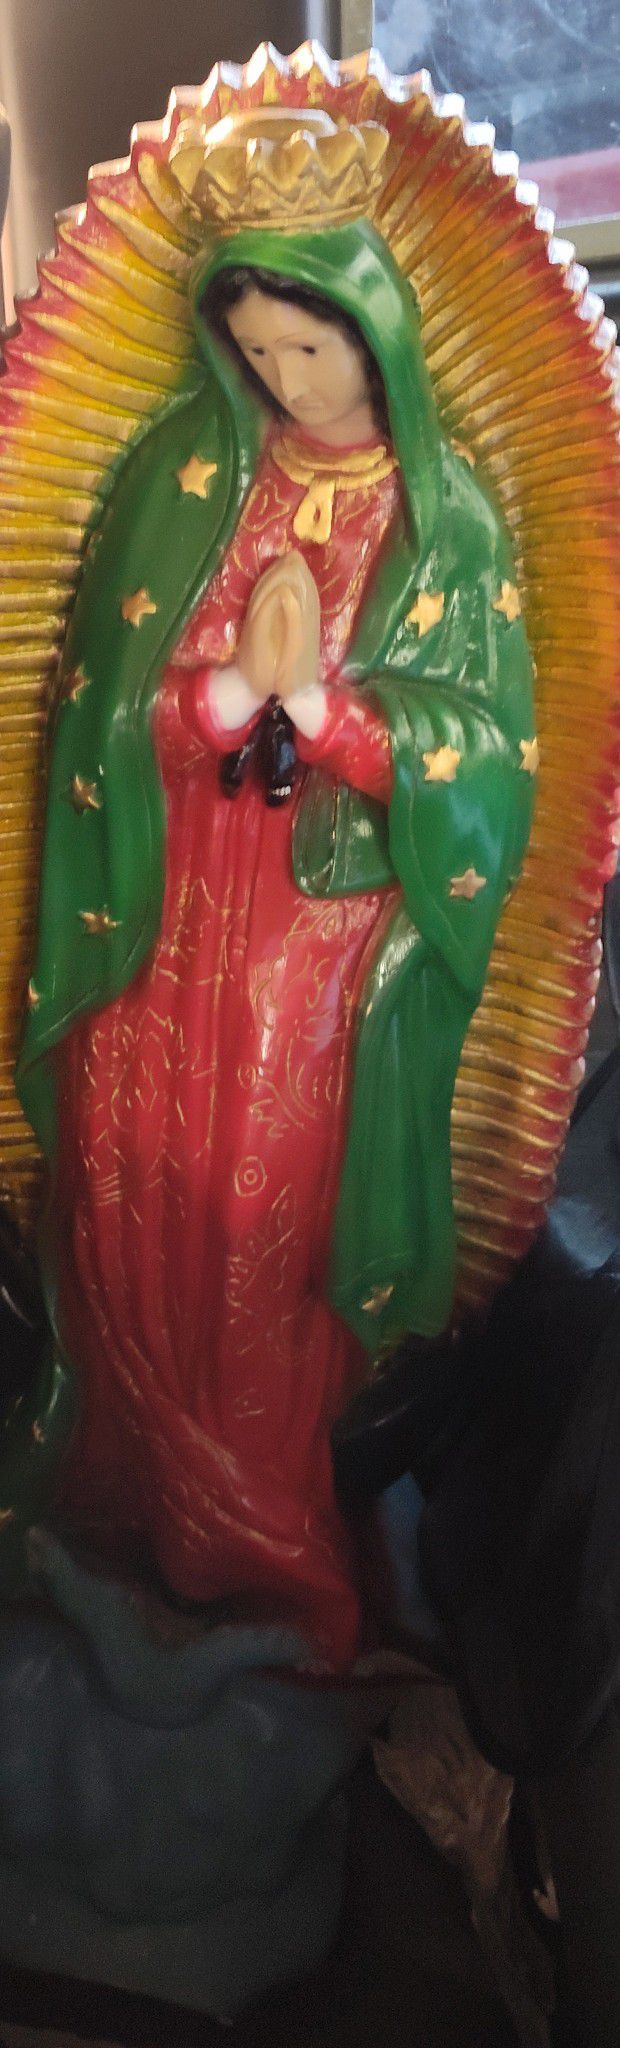 Virgin Merry Statue 